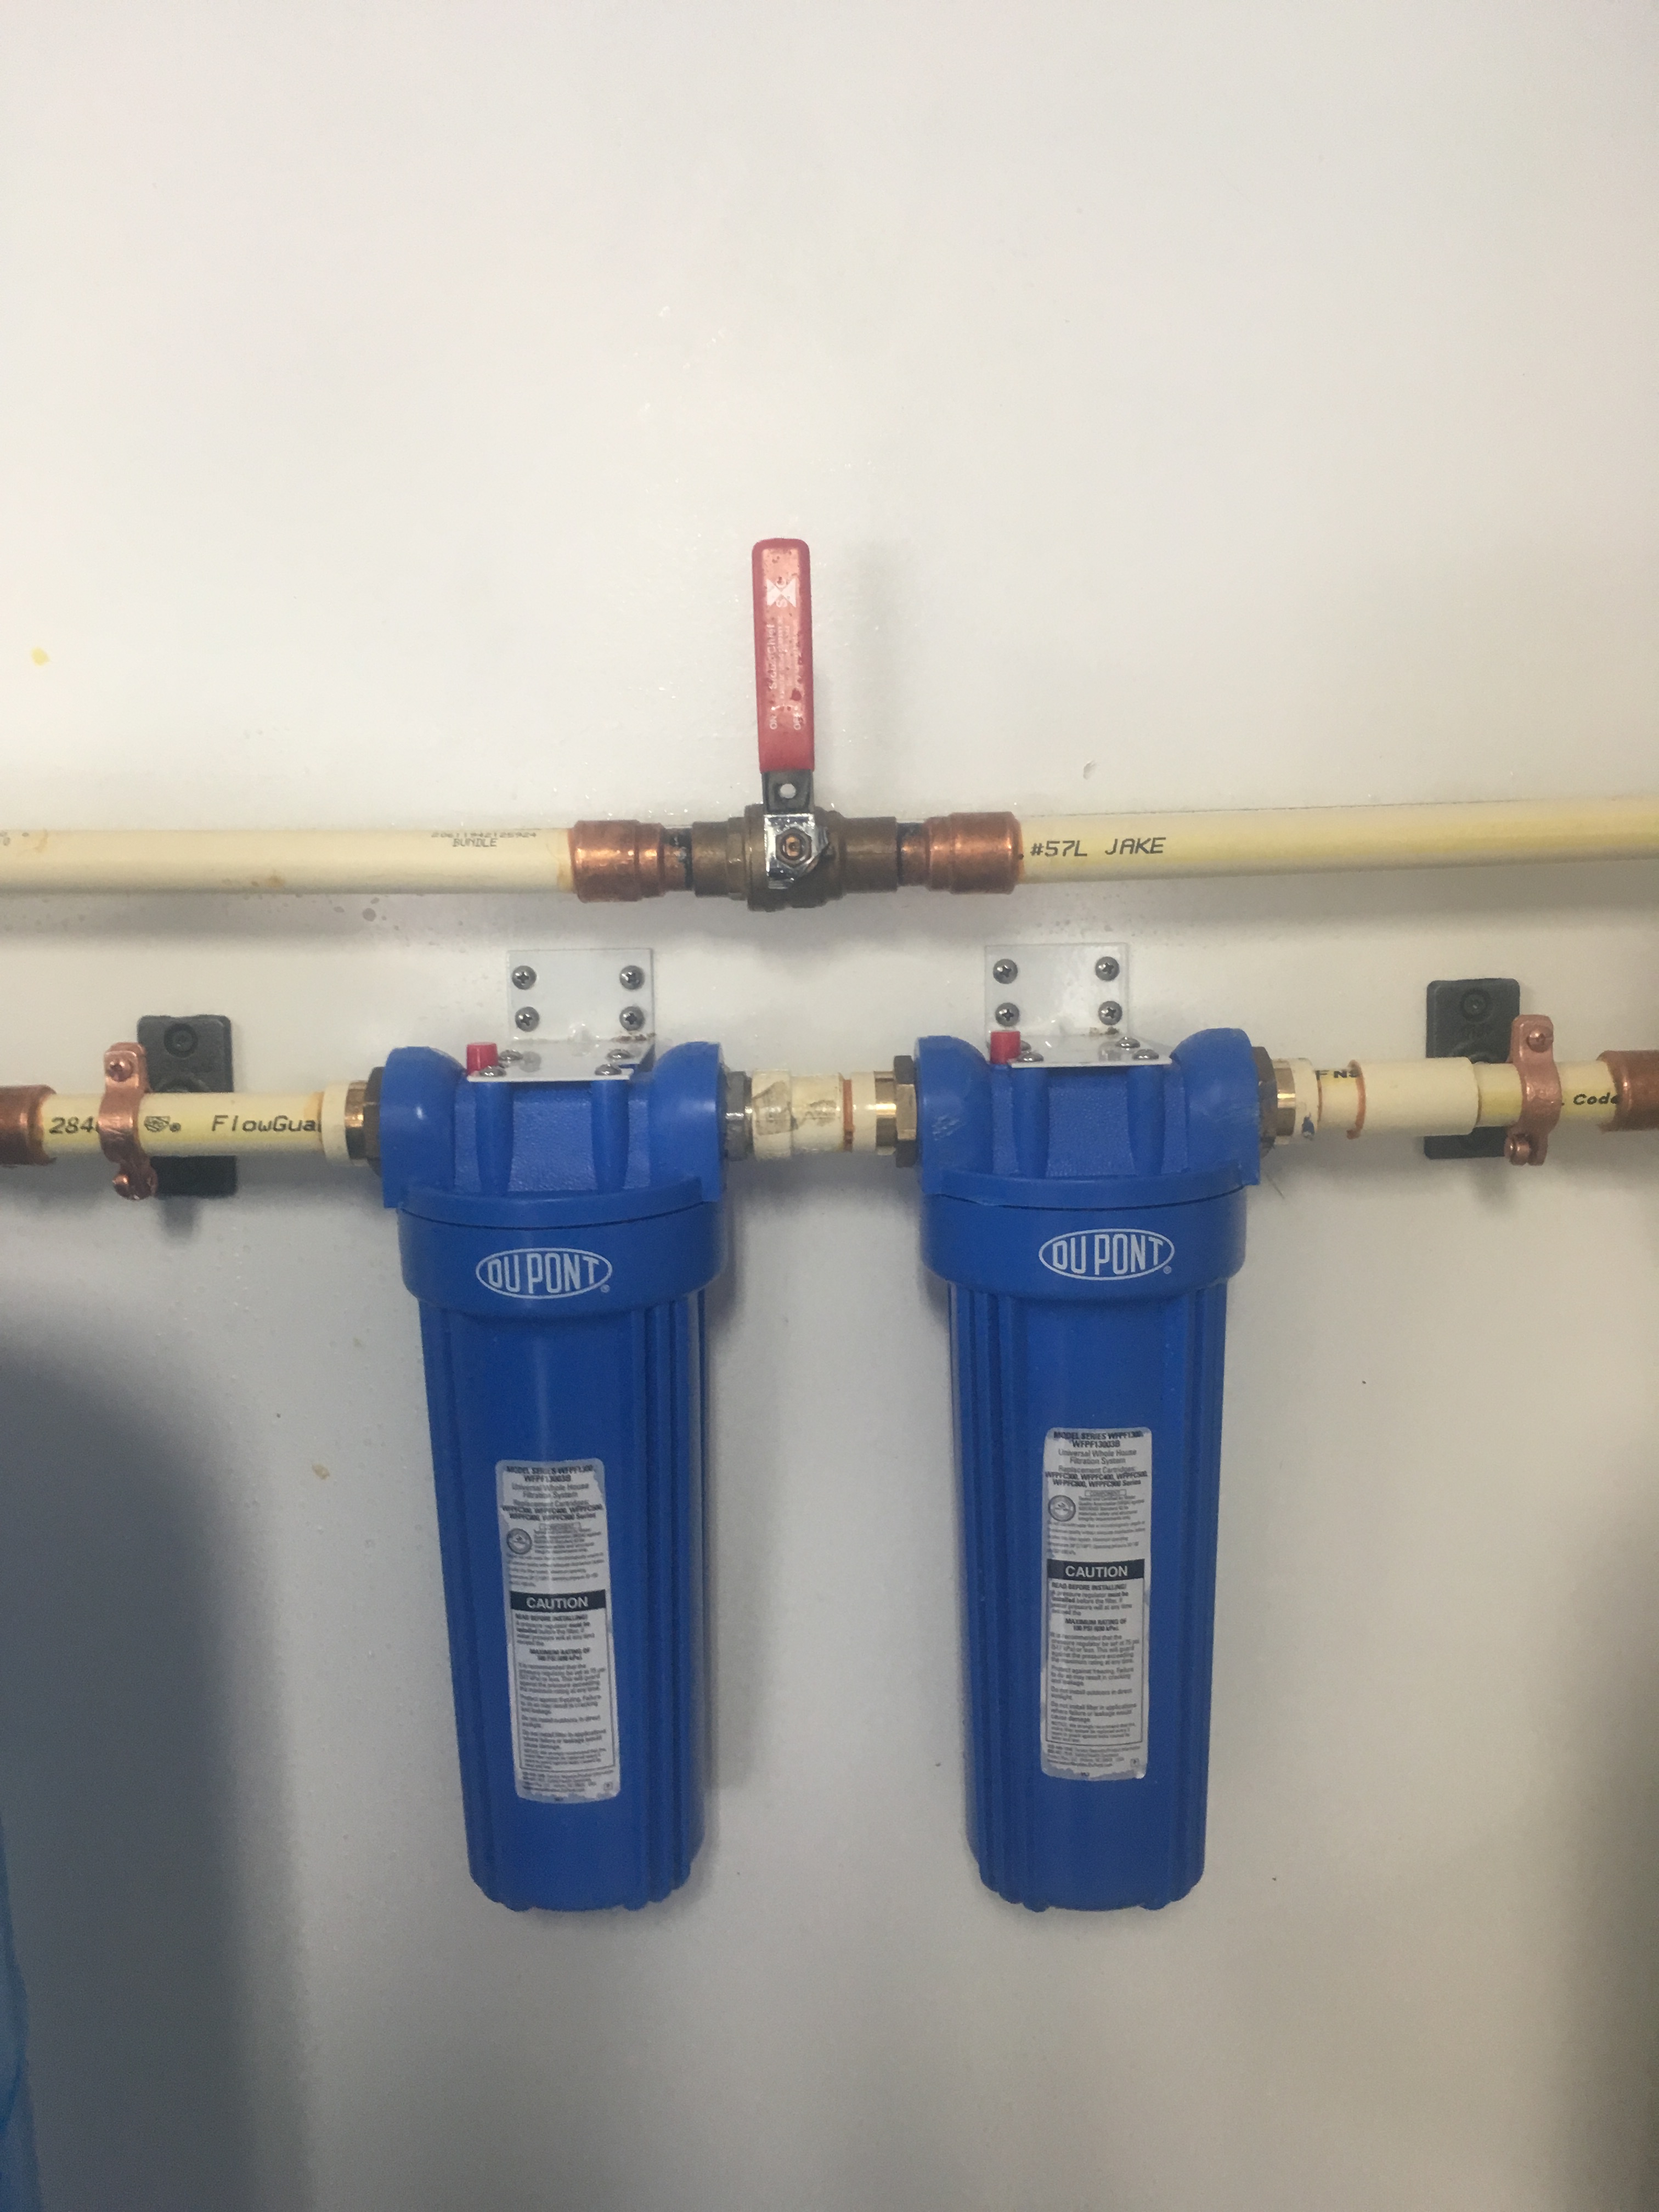 Du Pont water filtration system